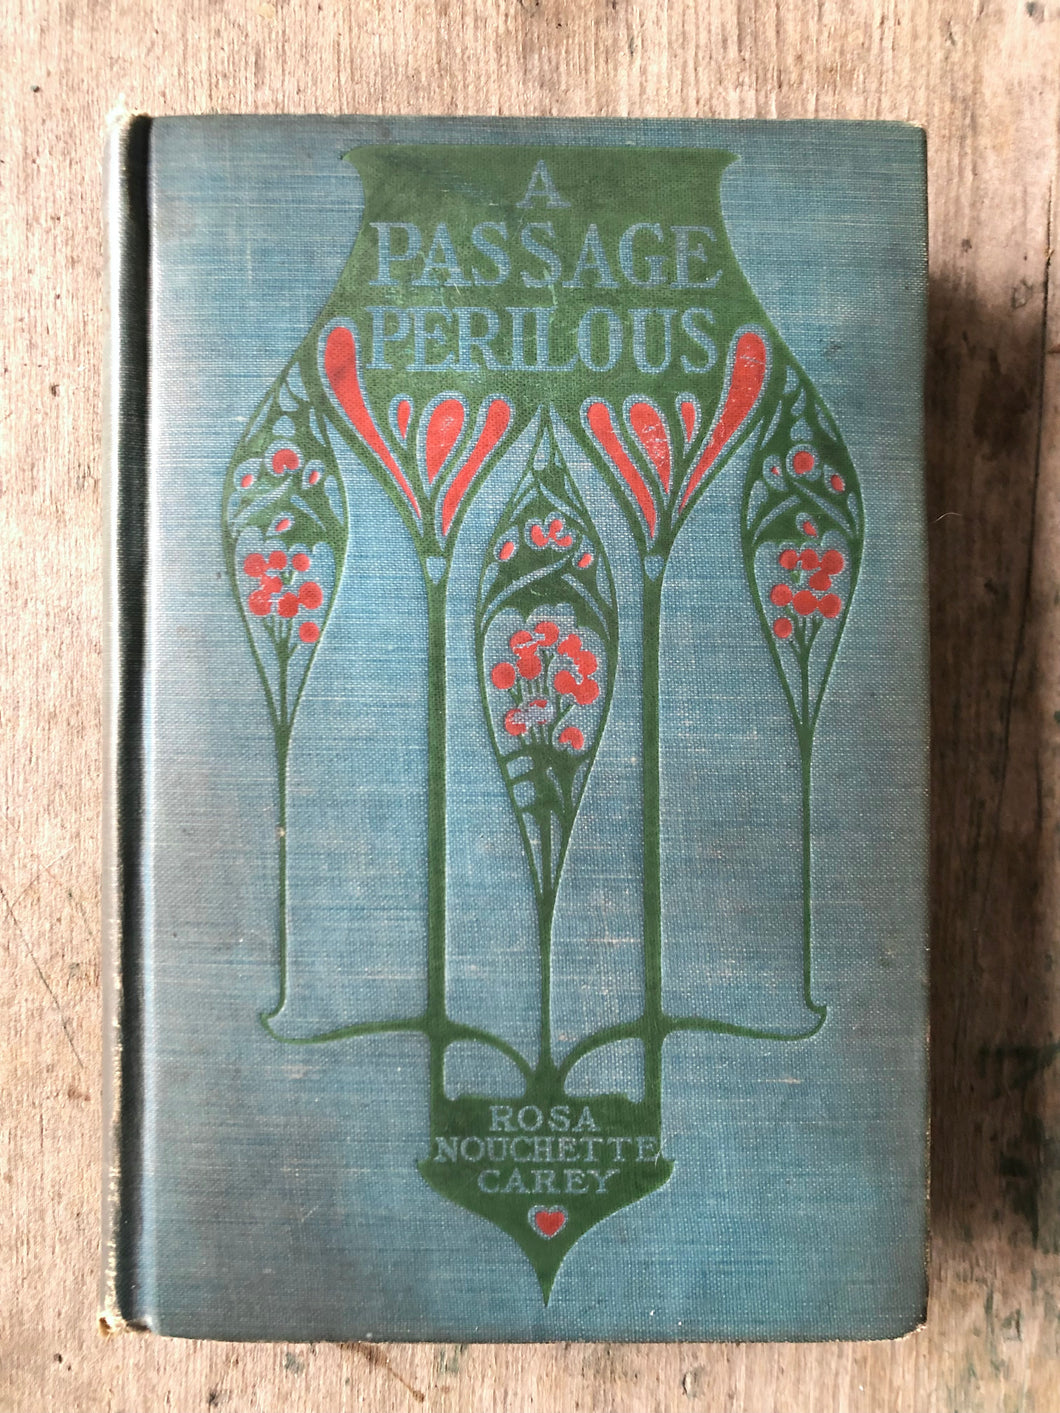 A Passage Perilous. by Rosa Nouchette Carey